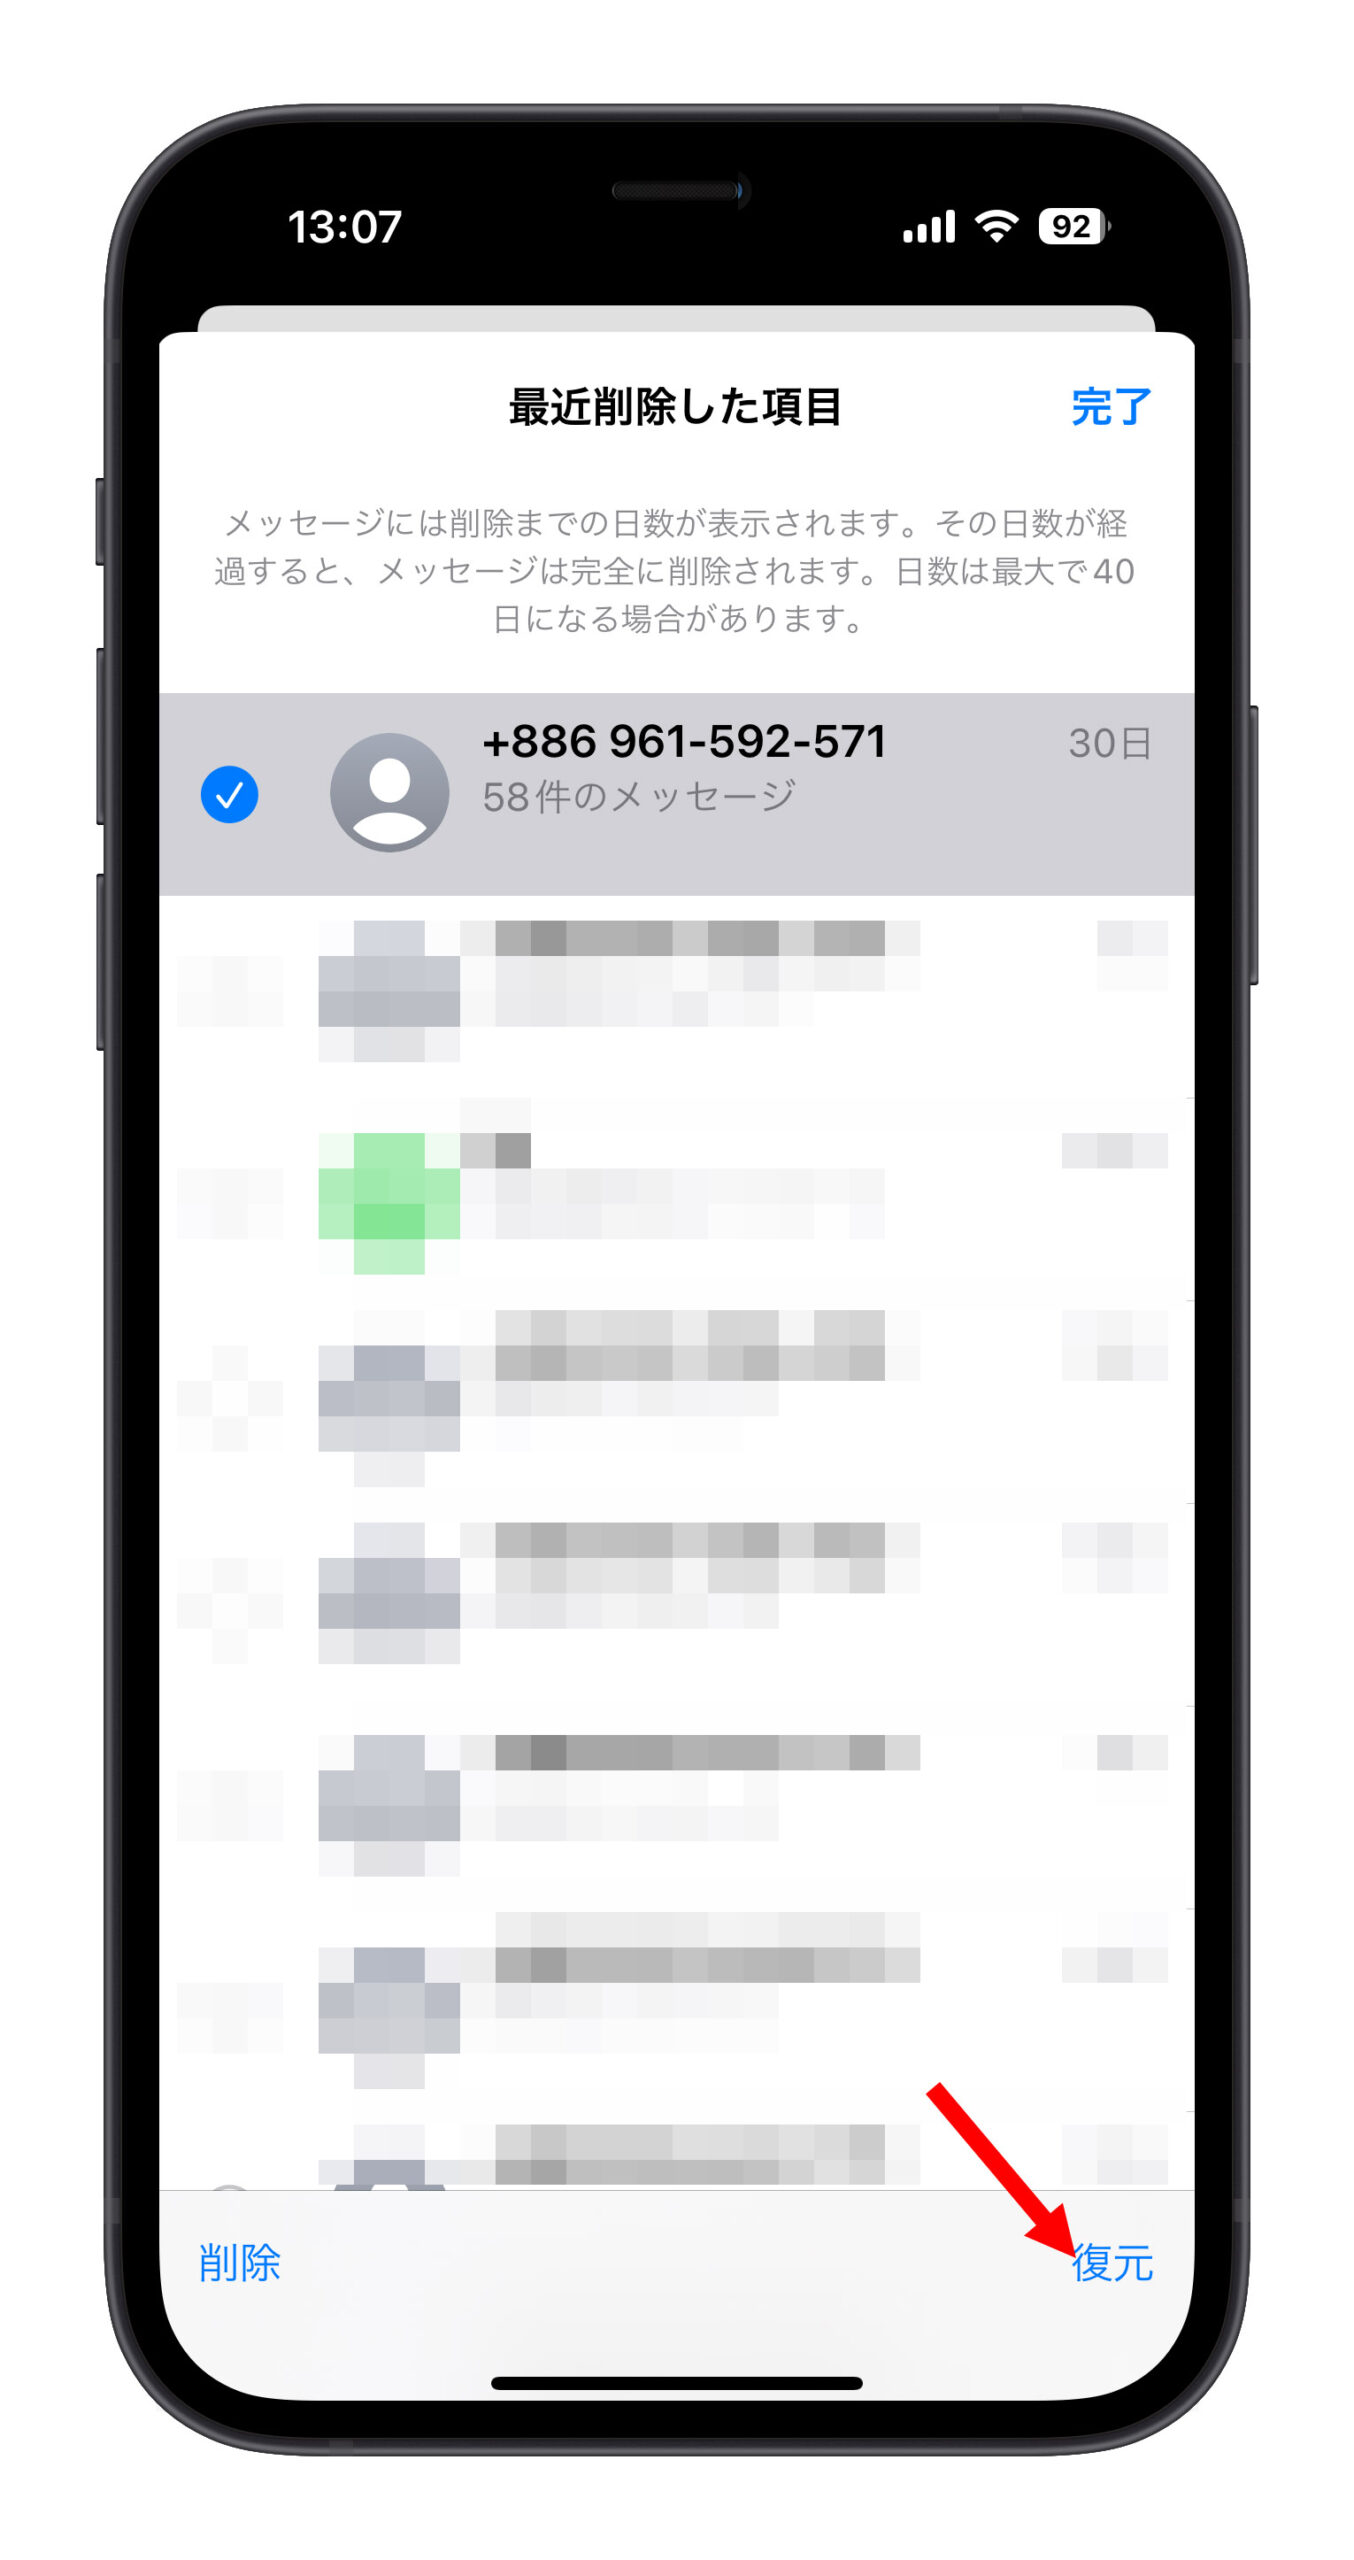 iPhone SMS認証コード自動削除の有効化